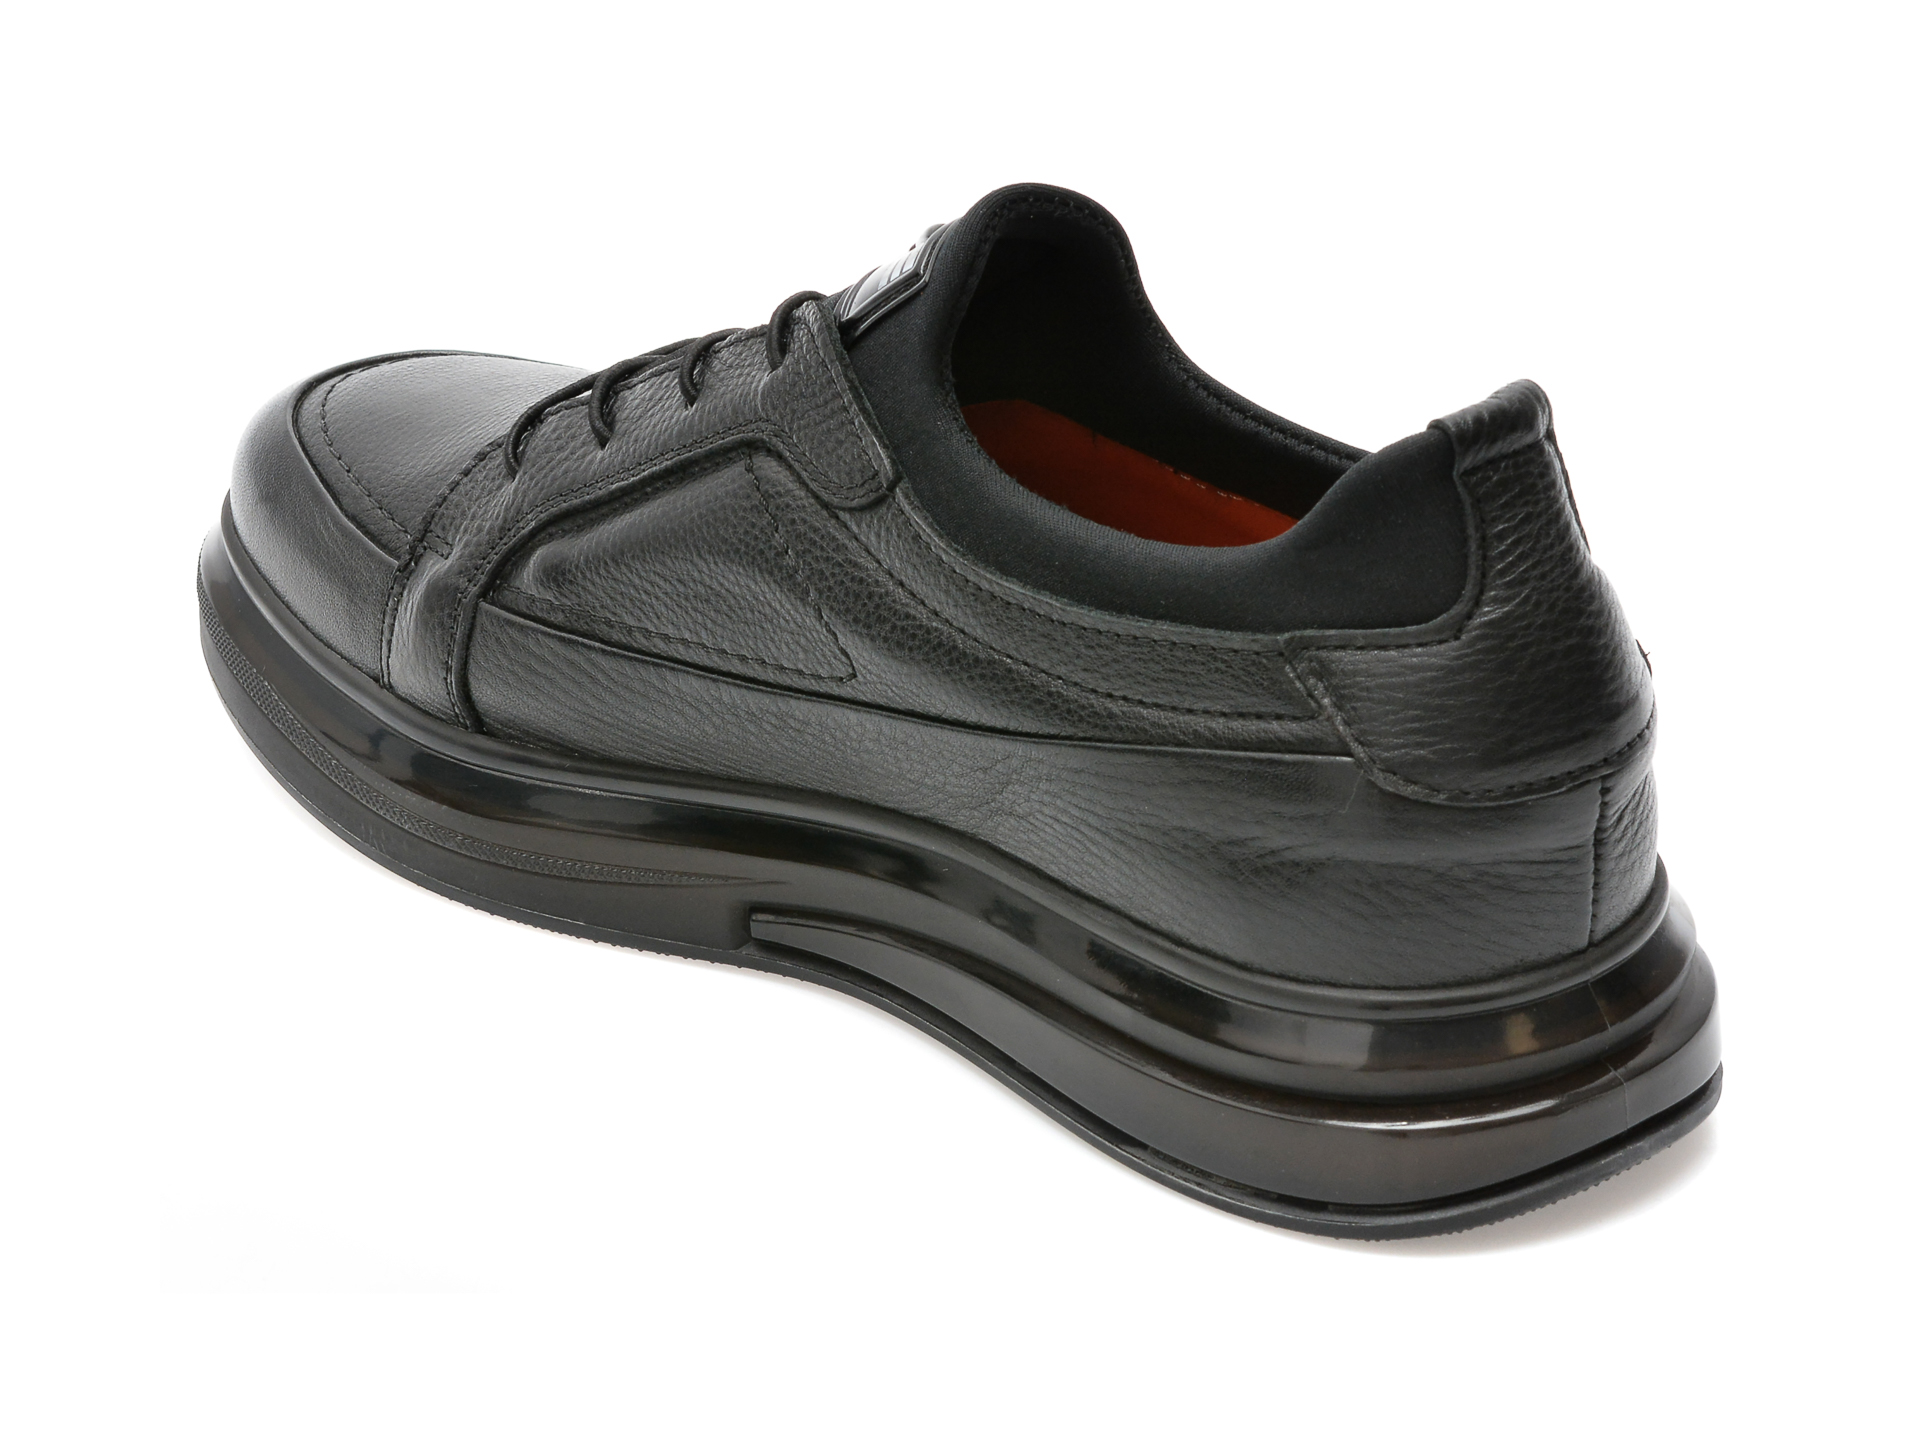 Poze Pantofi EPICA negri, 3314, din piele naturala tezyo.ro